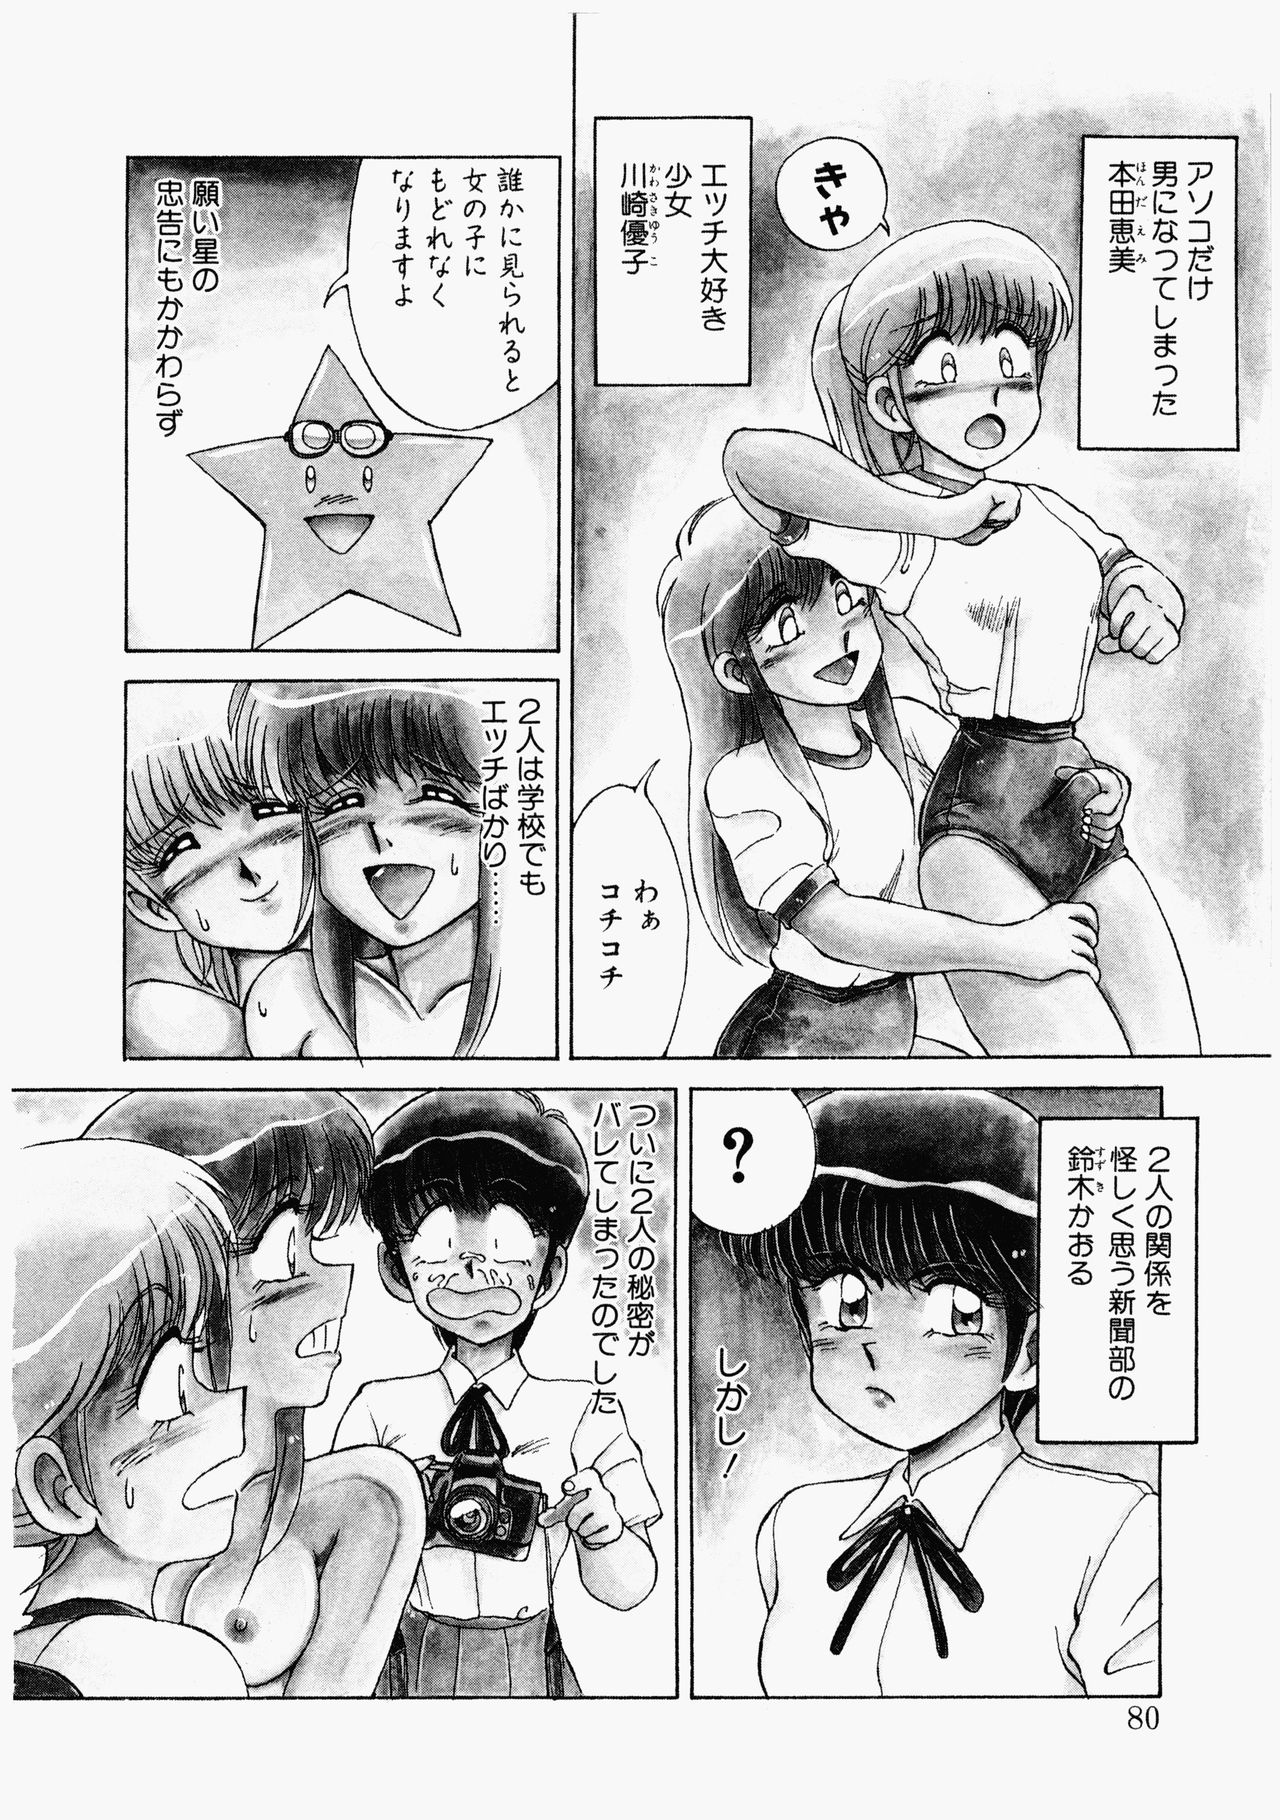 [Mizuyoukan] Happening Star [水ようかん] ハッピにんぐSTAR